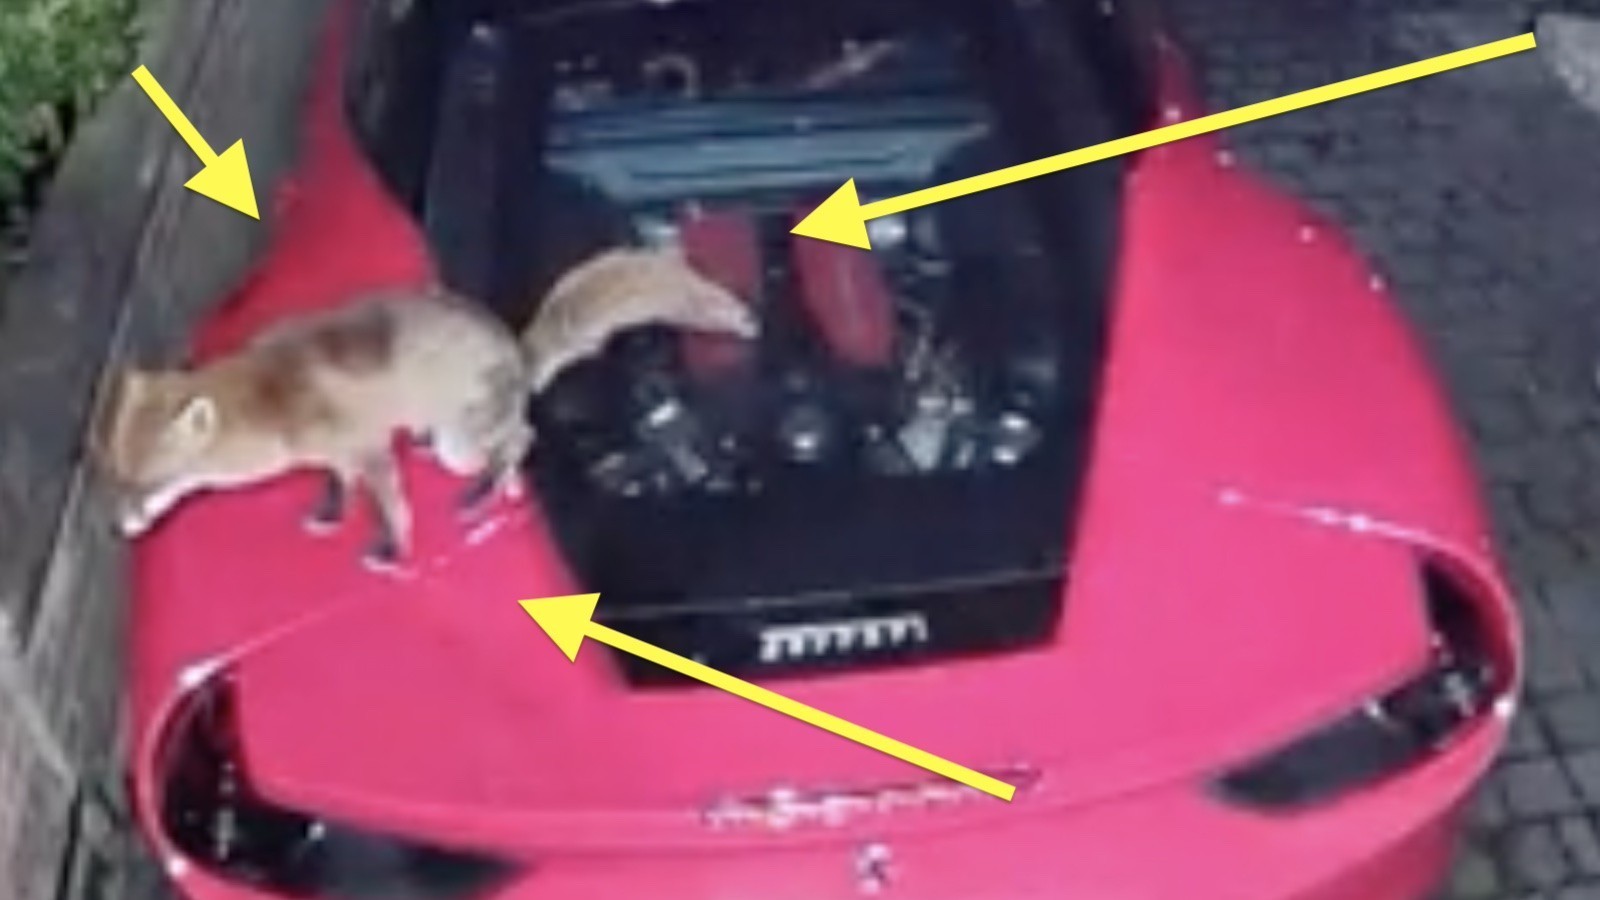 Vos doet een poep op een Ferrari [ja, dat hebben we op video]